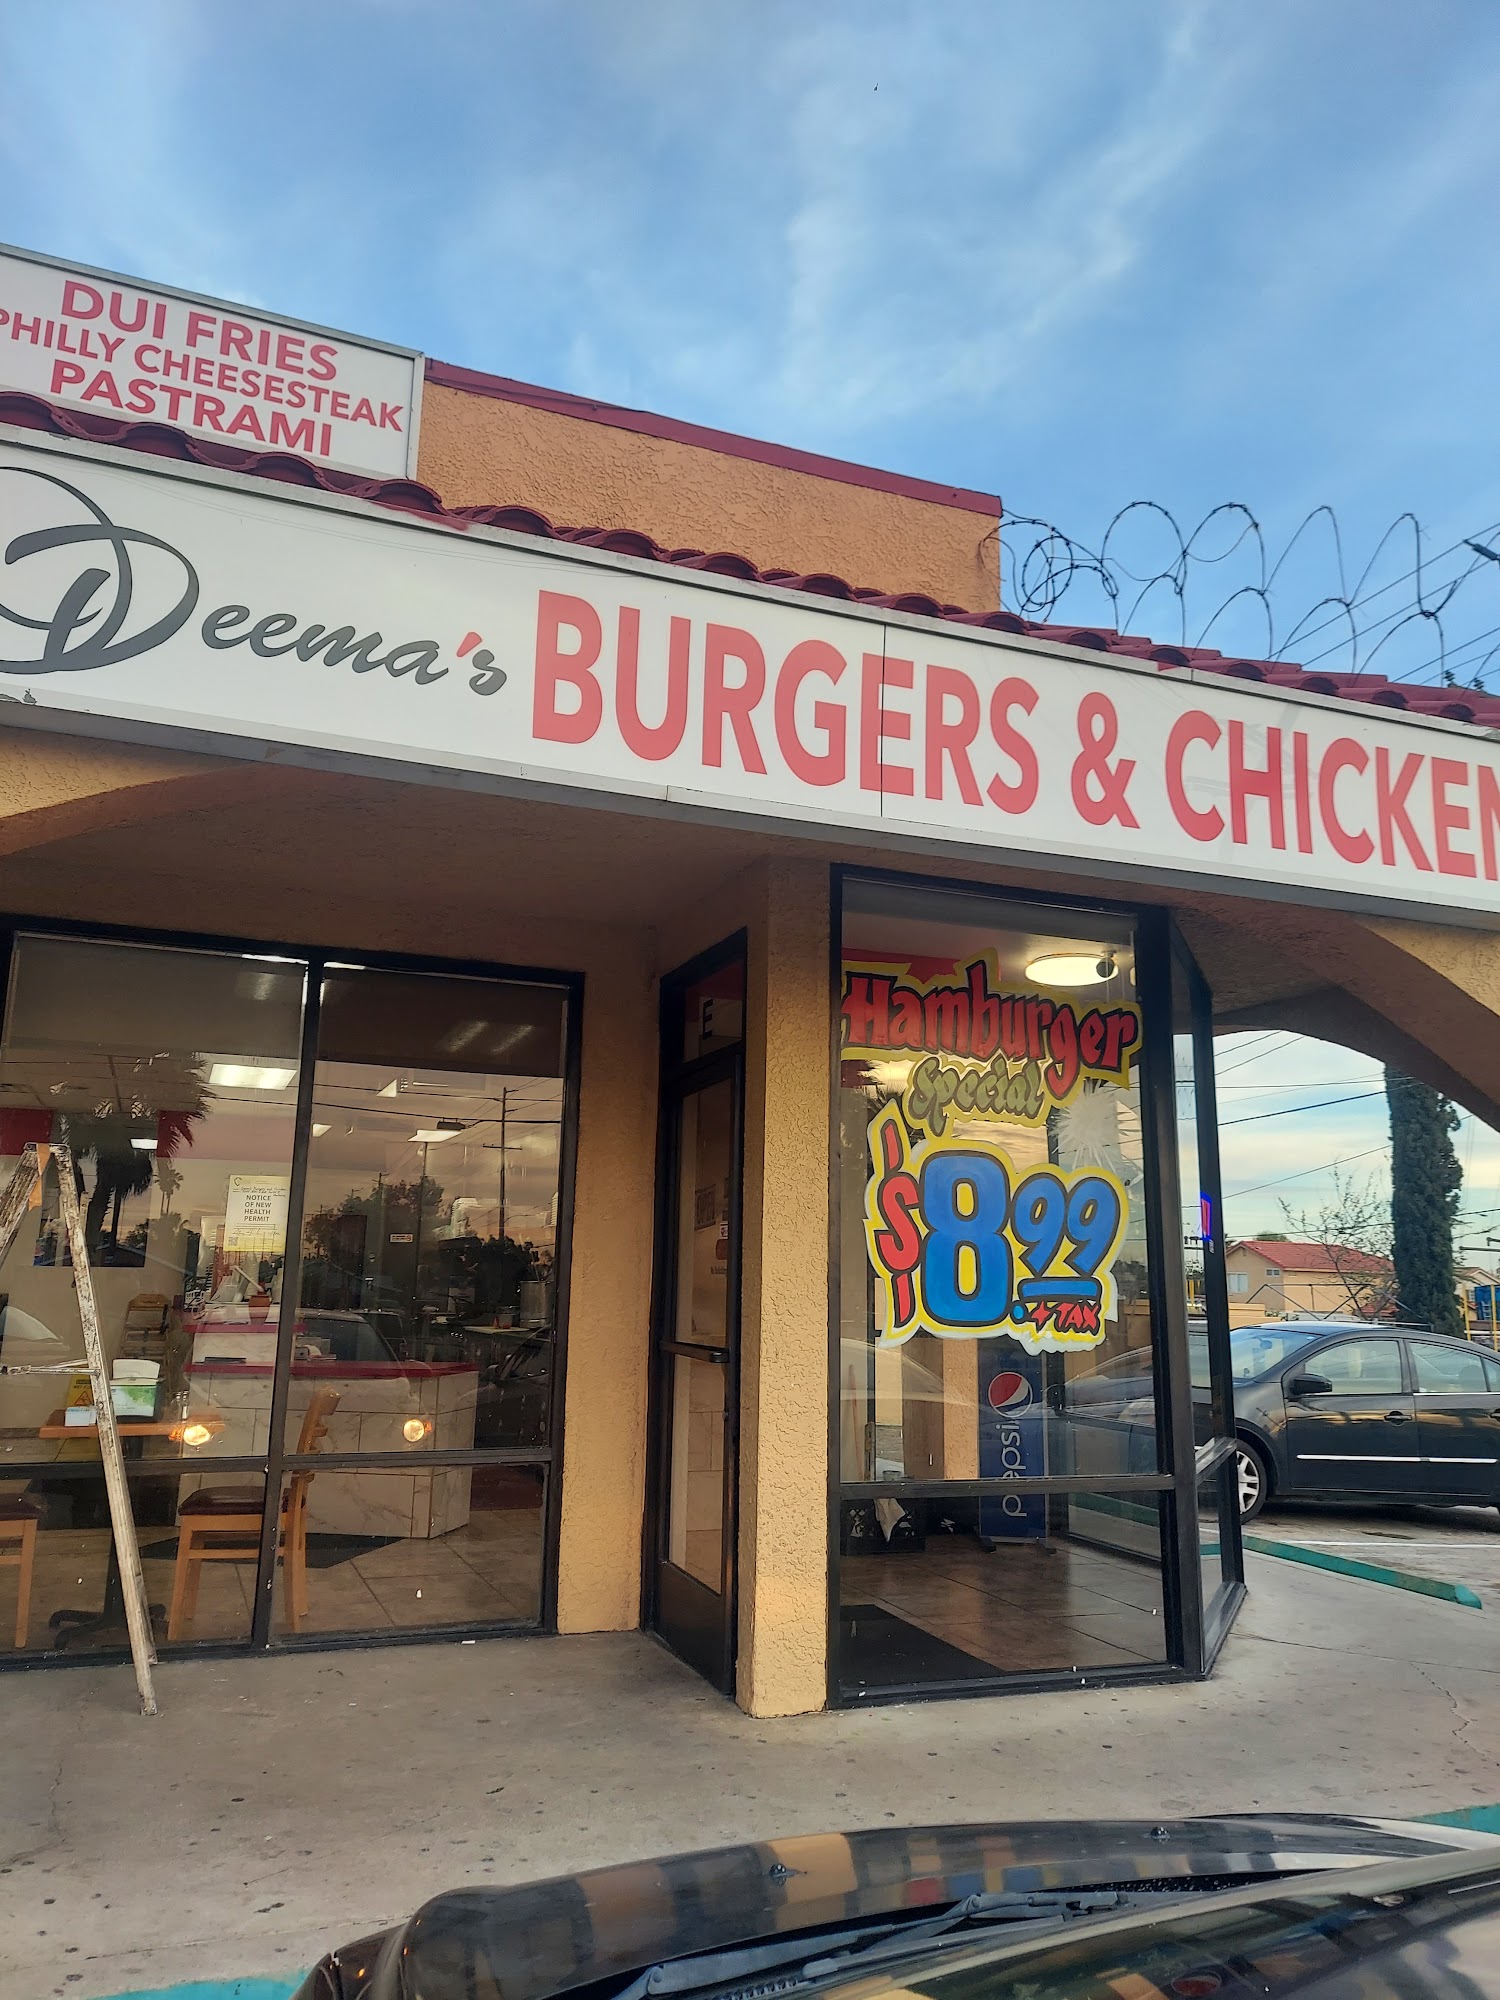 Deema's Burgers & Chicken